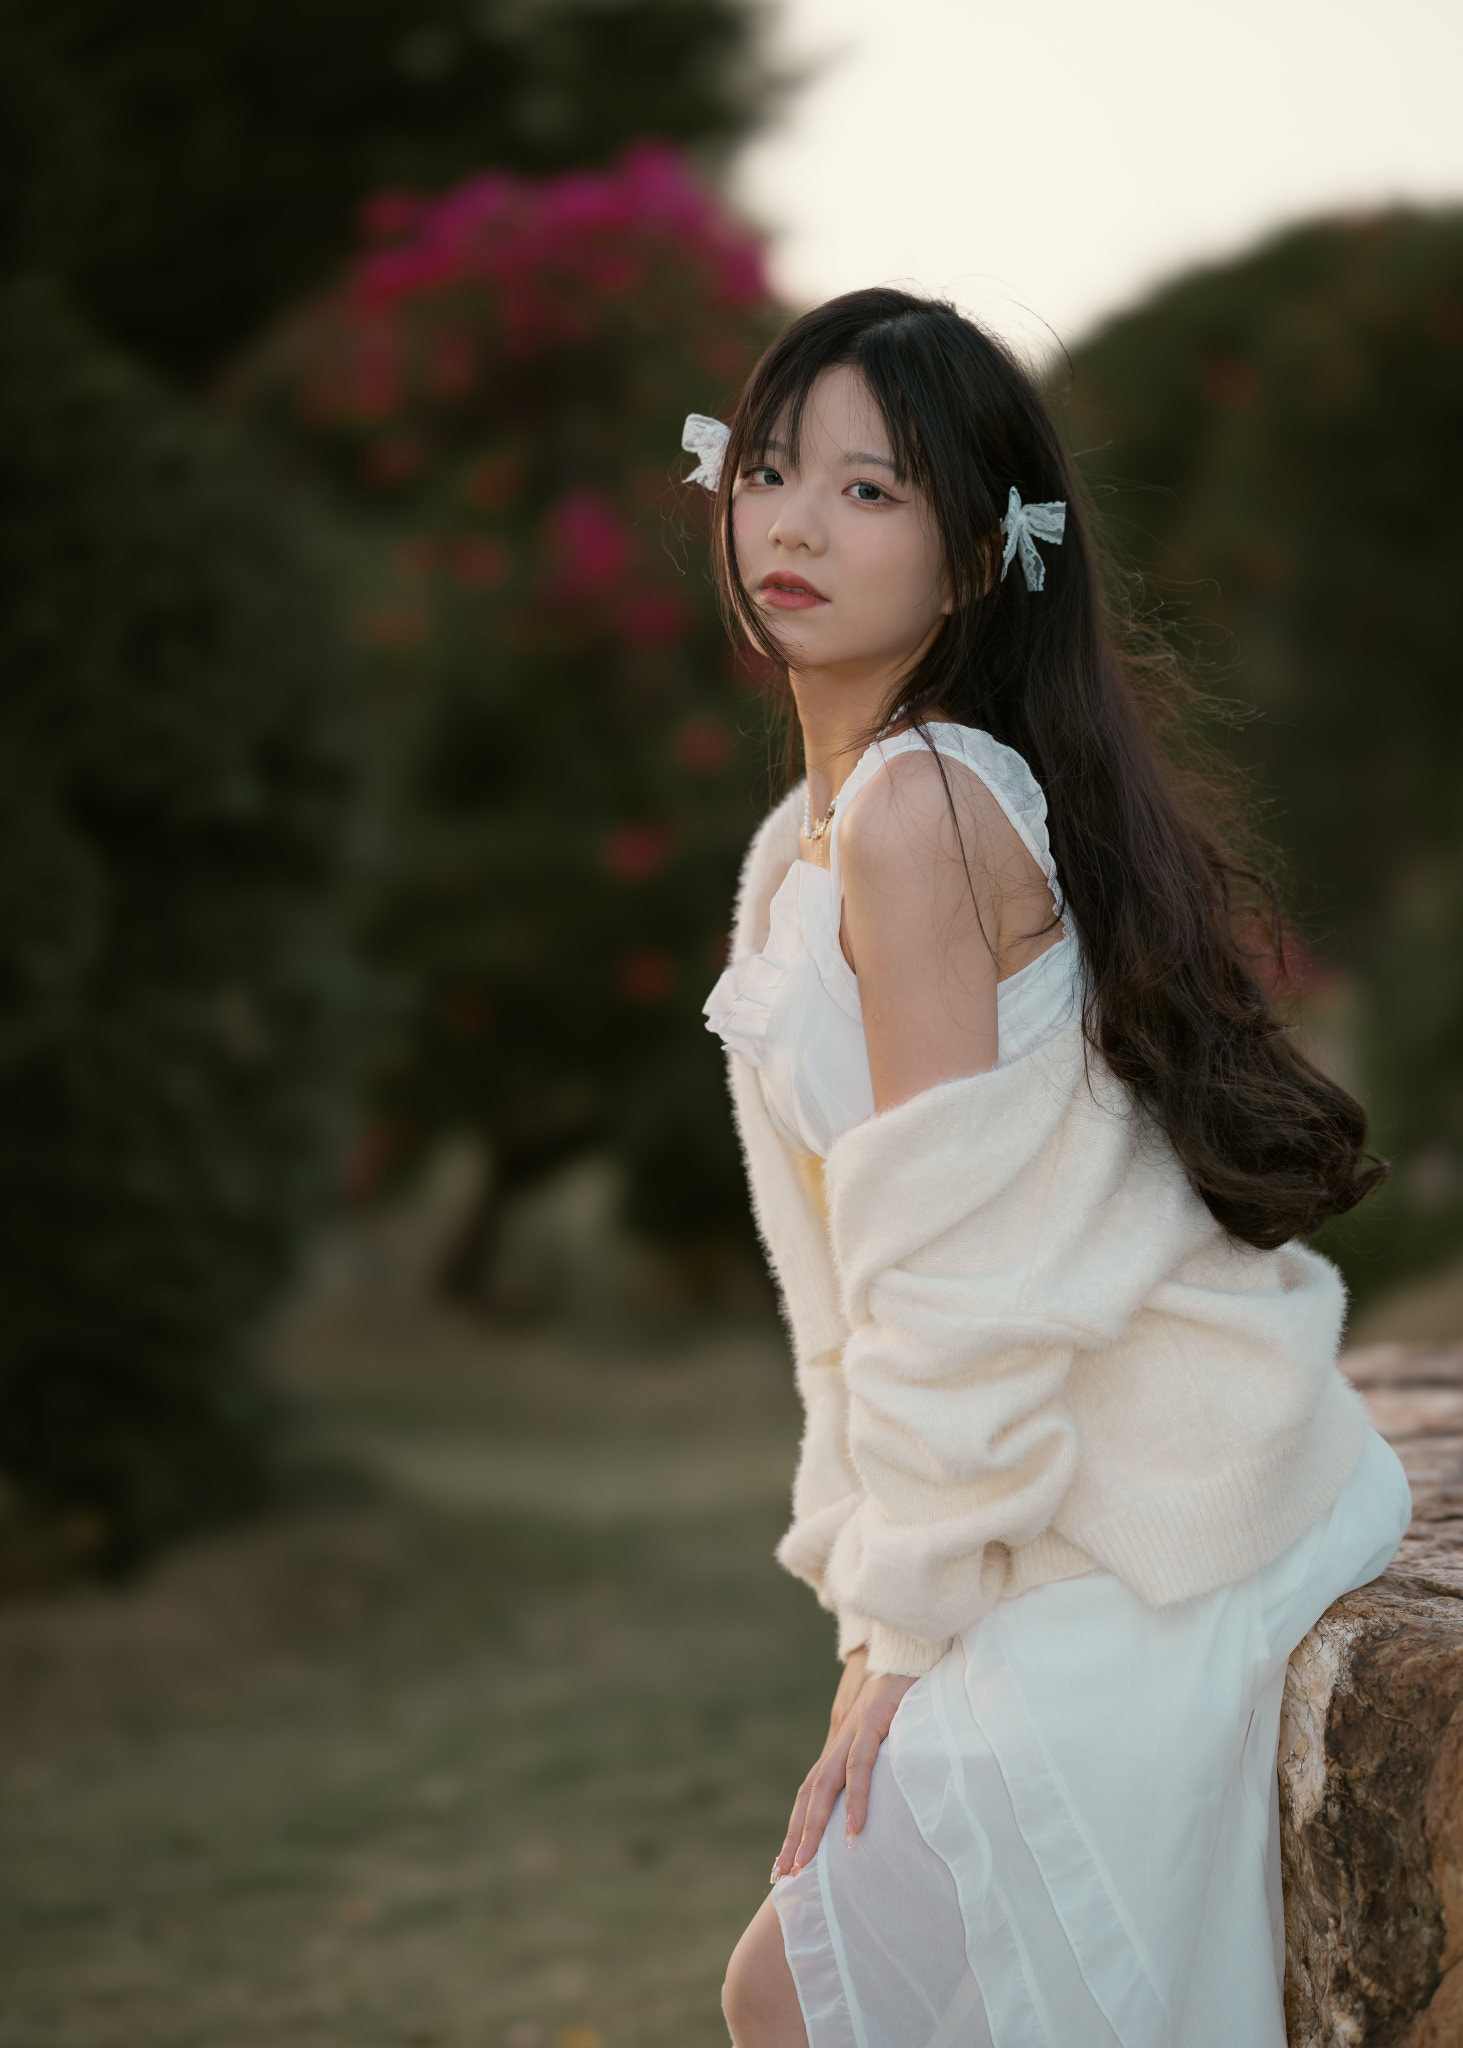 Qin Xiaoqiang Women Asian Dark Hair White Clothing Ribbon Looking At Viewer Outdoors 1463x2048